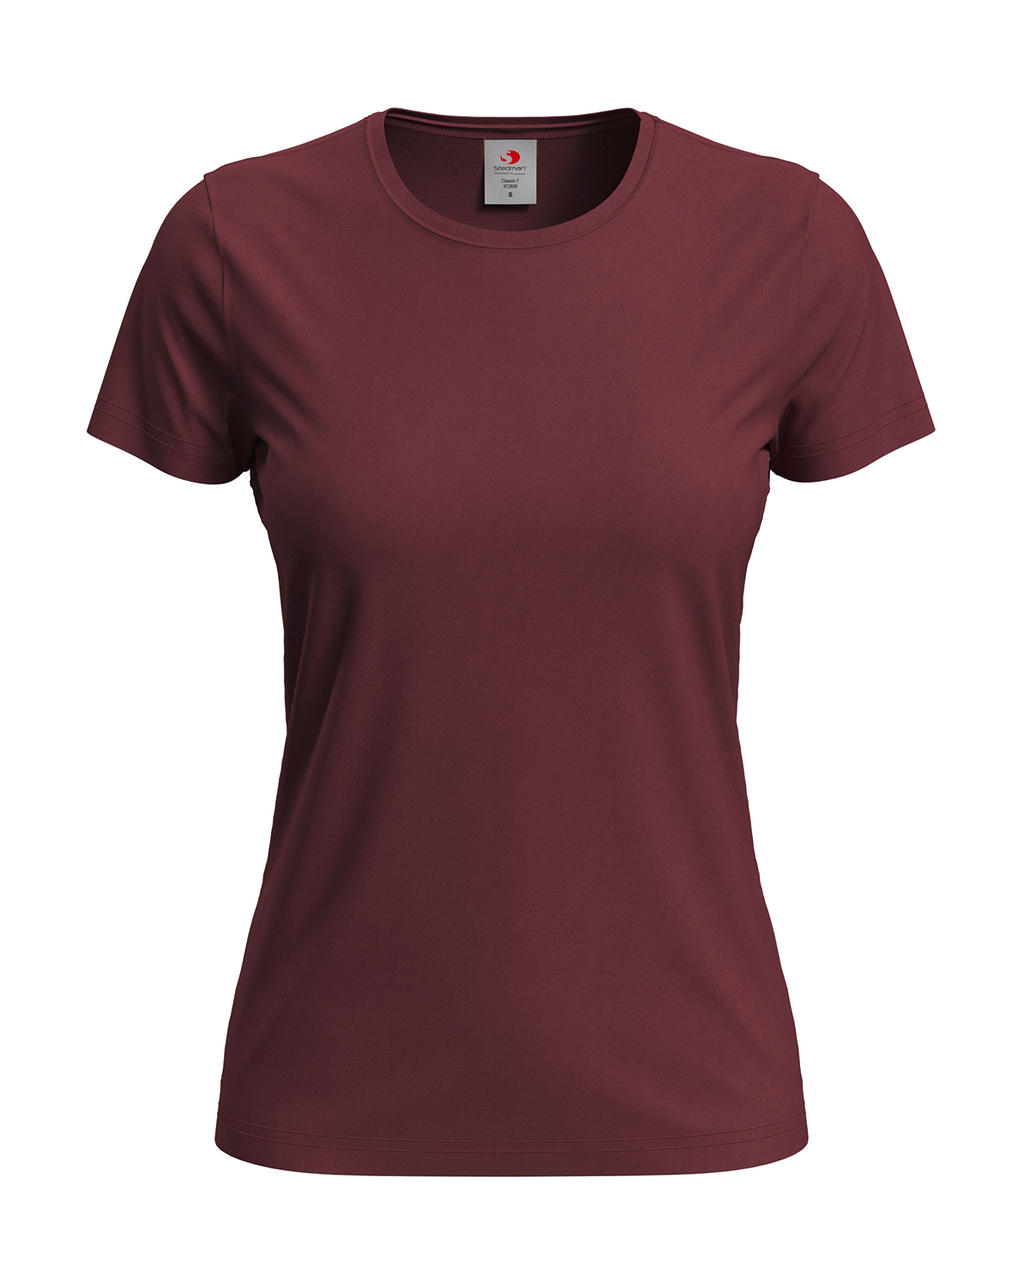 Tričko dámské Stedman Fitted s kulatým výstřihem - tmavě červené, XL